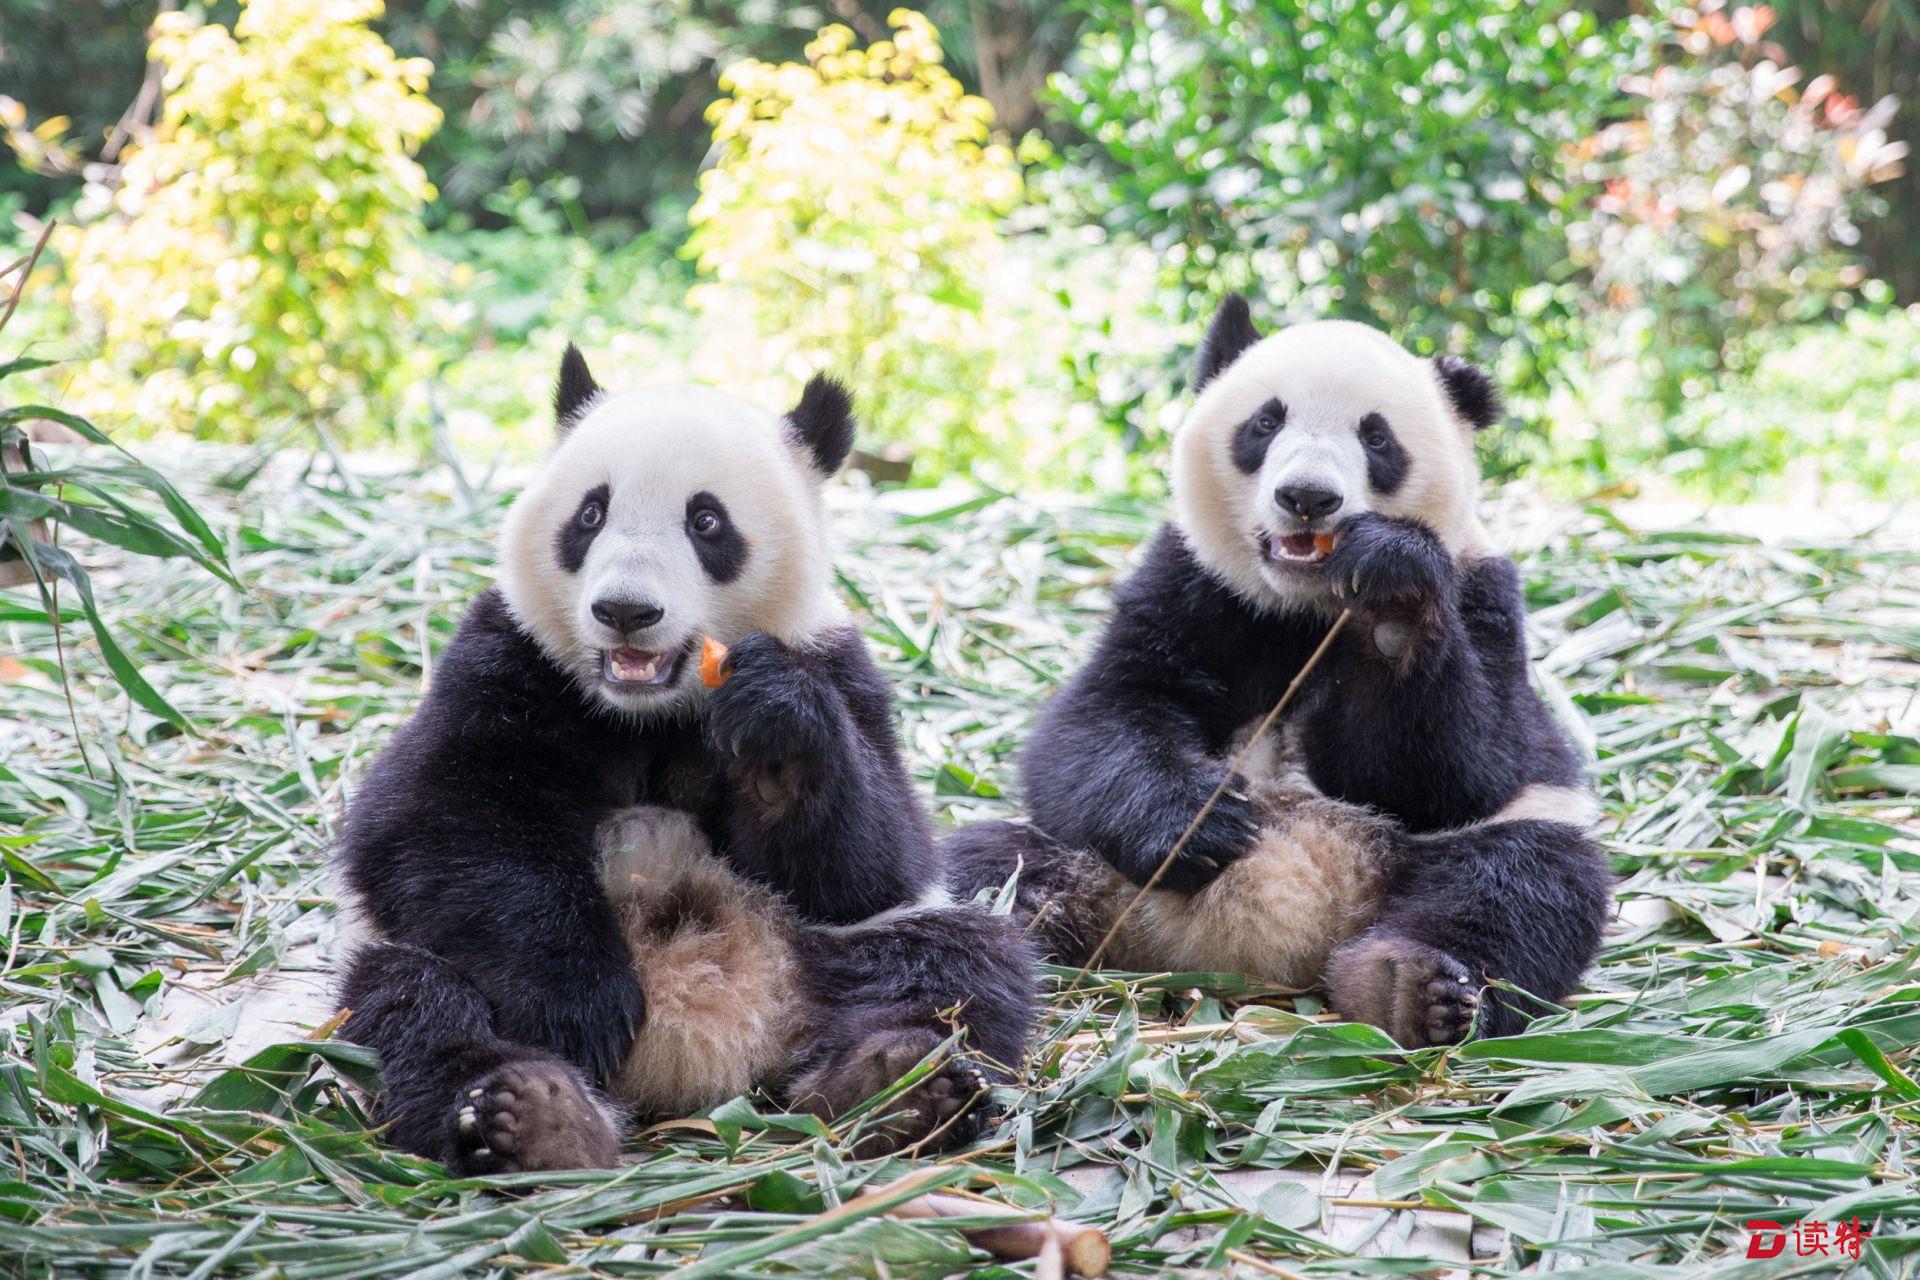 萌萌哒长隆野生动物世界出生的大熊猫双胞胎独立生活啦